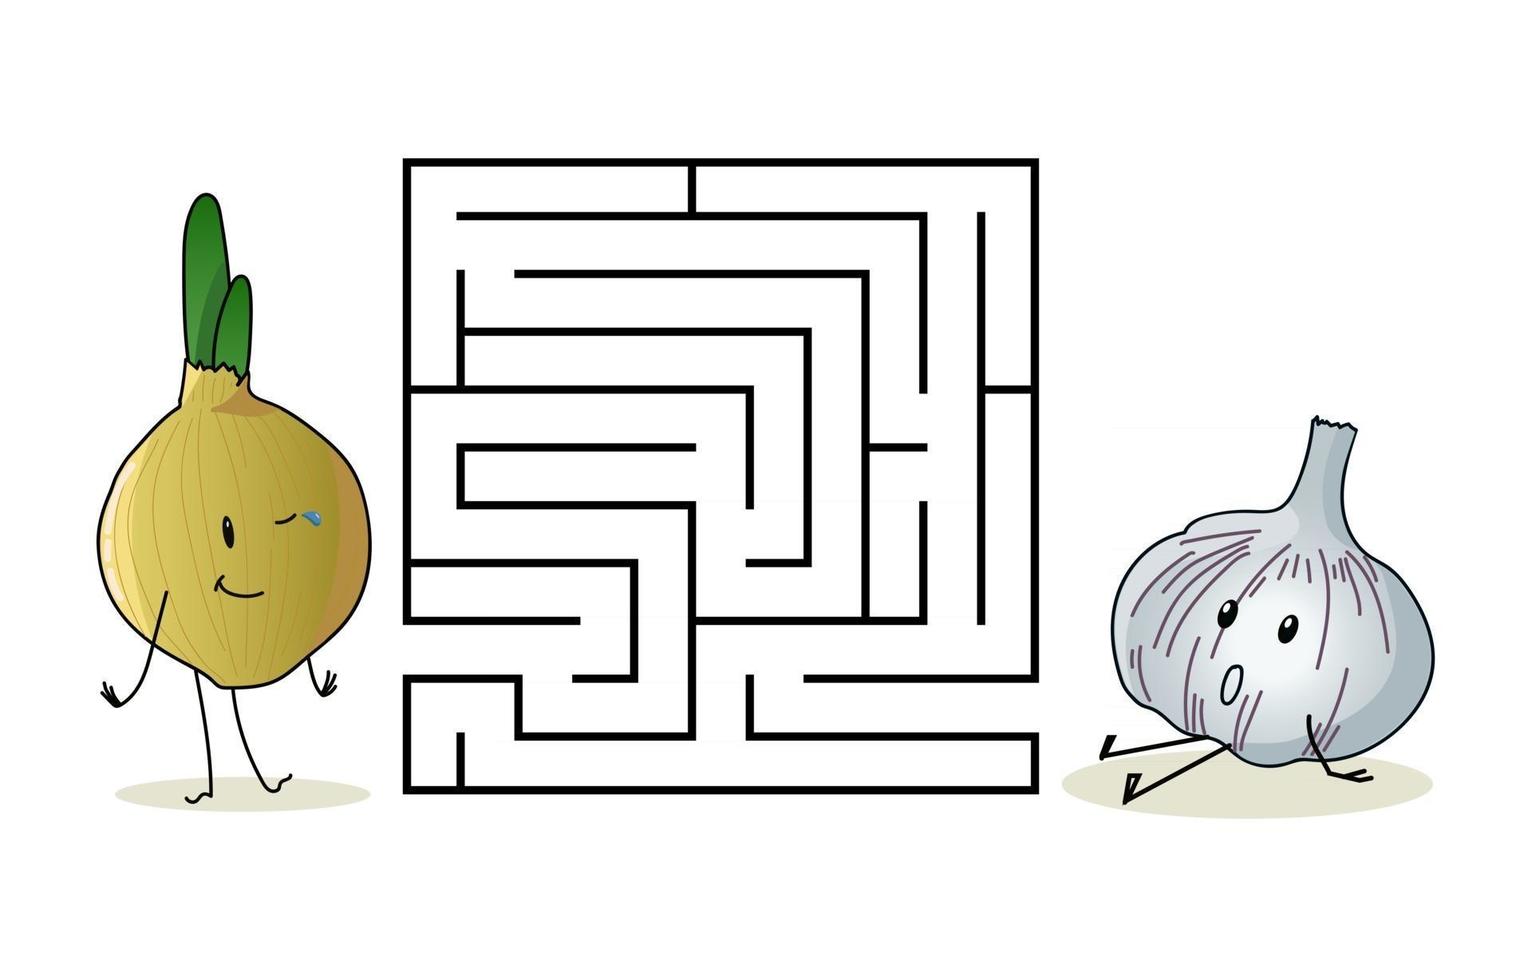 quadratisches labyrinth mit zeichentrickfiguren. süße Zwiebel und Knoblauch vektor